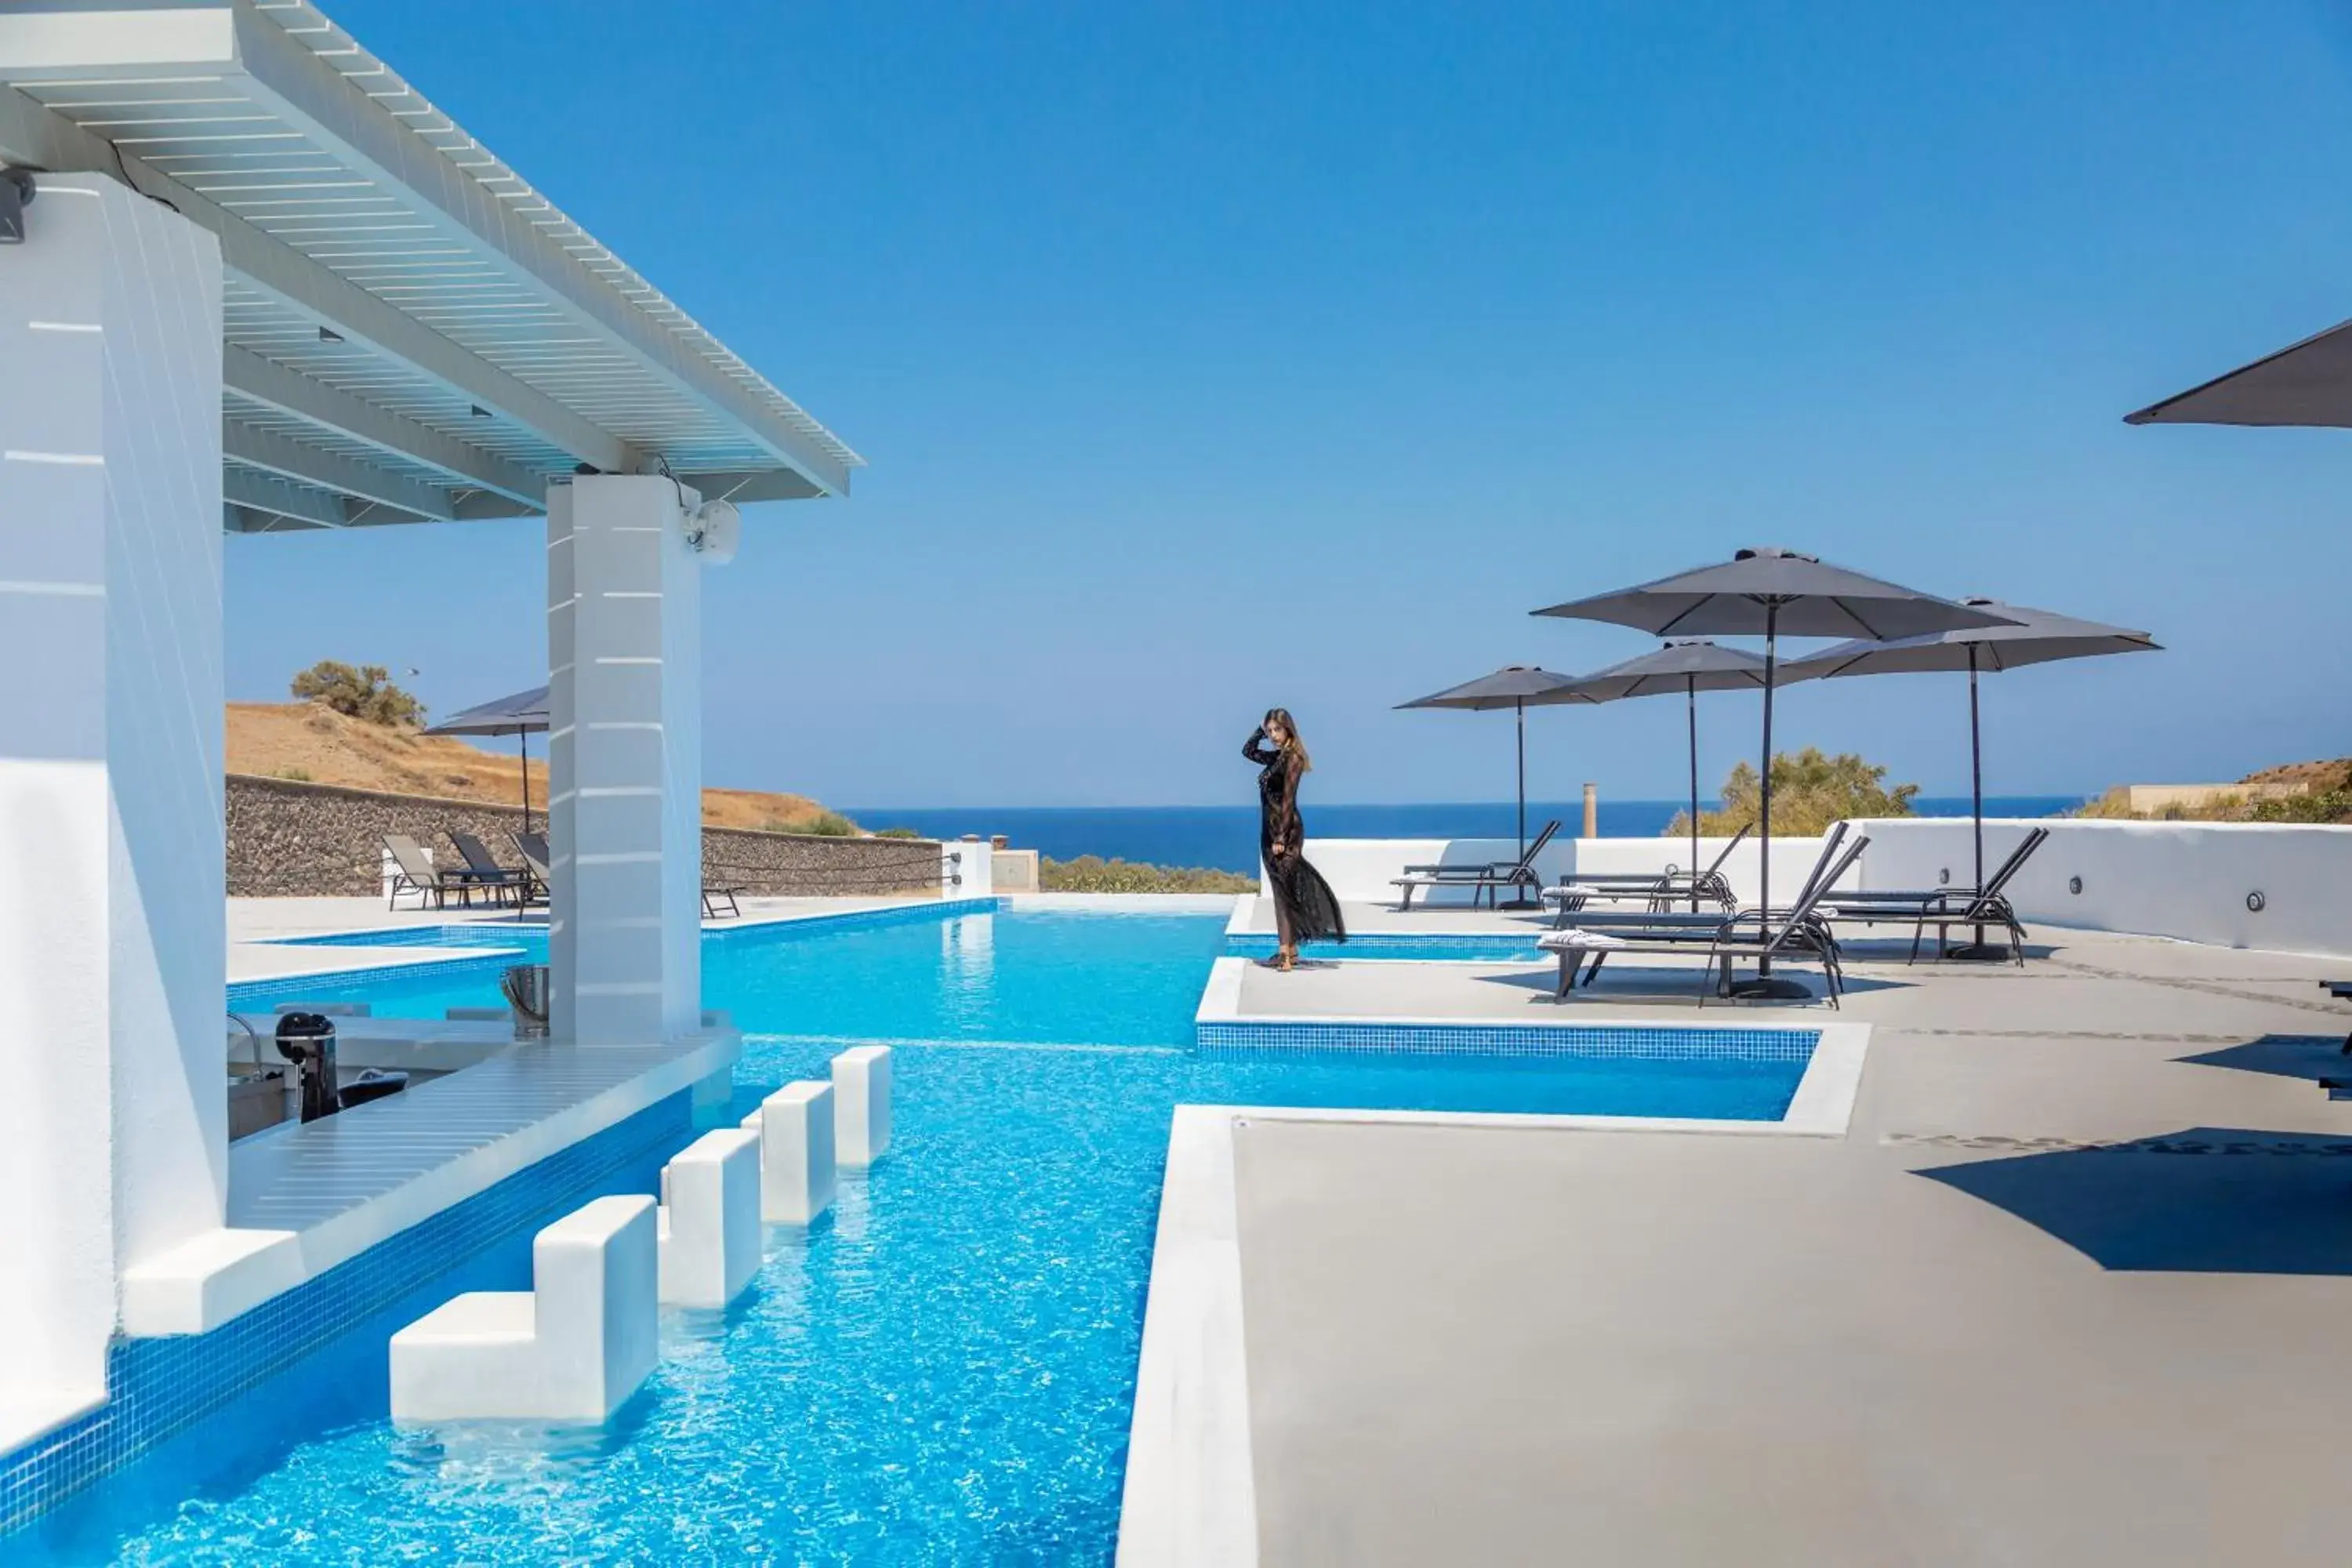 Swimming Pool in Desiterra Resort